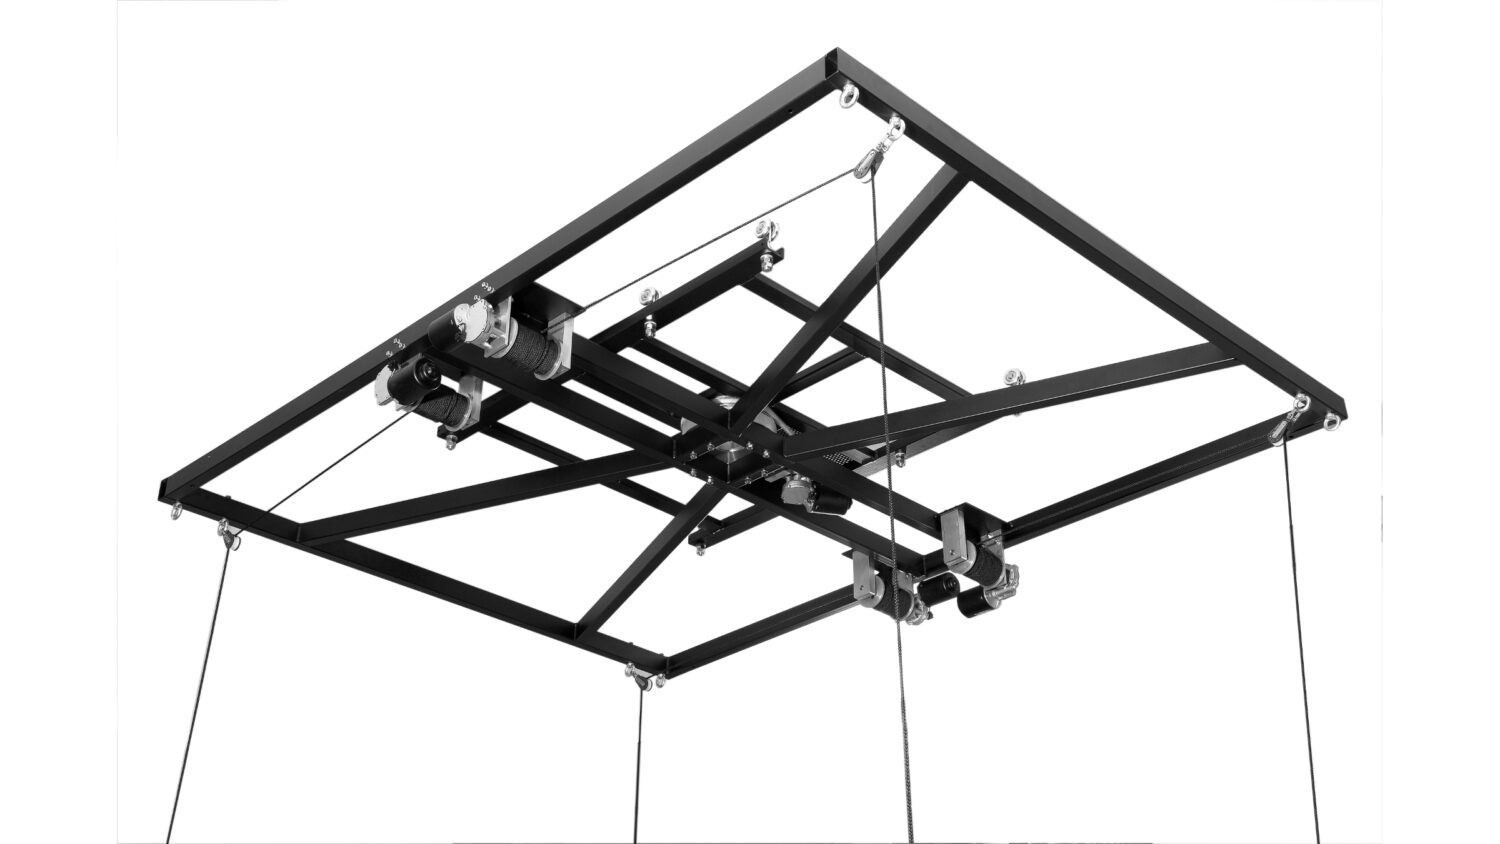 FOBA ceiling rail system suspension fram for heavy overhead light banks